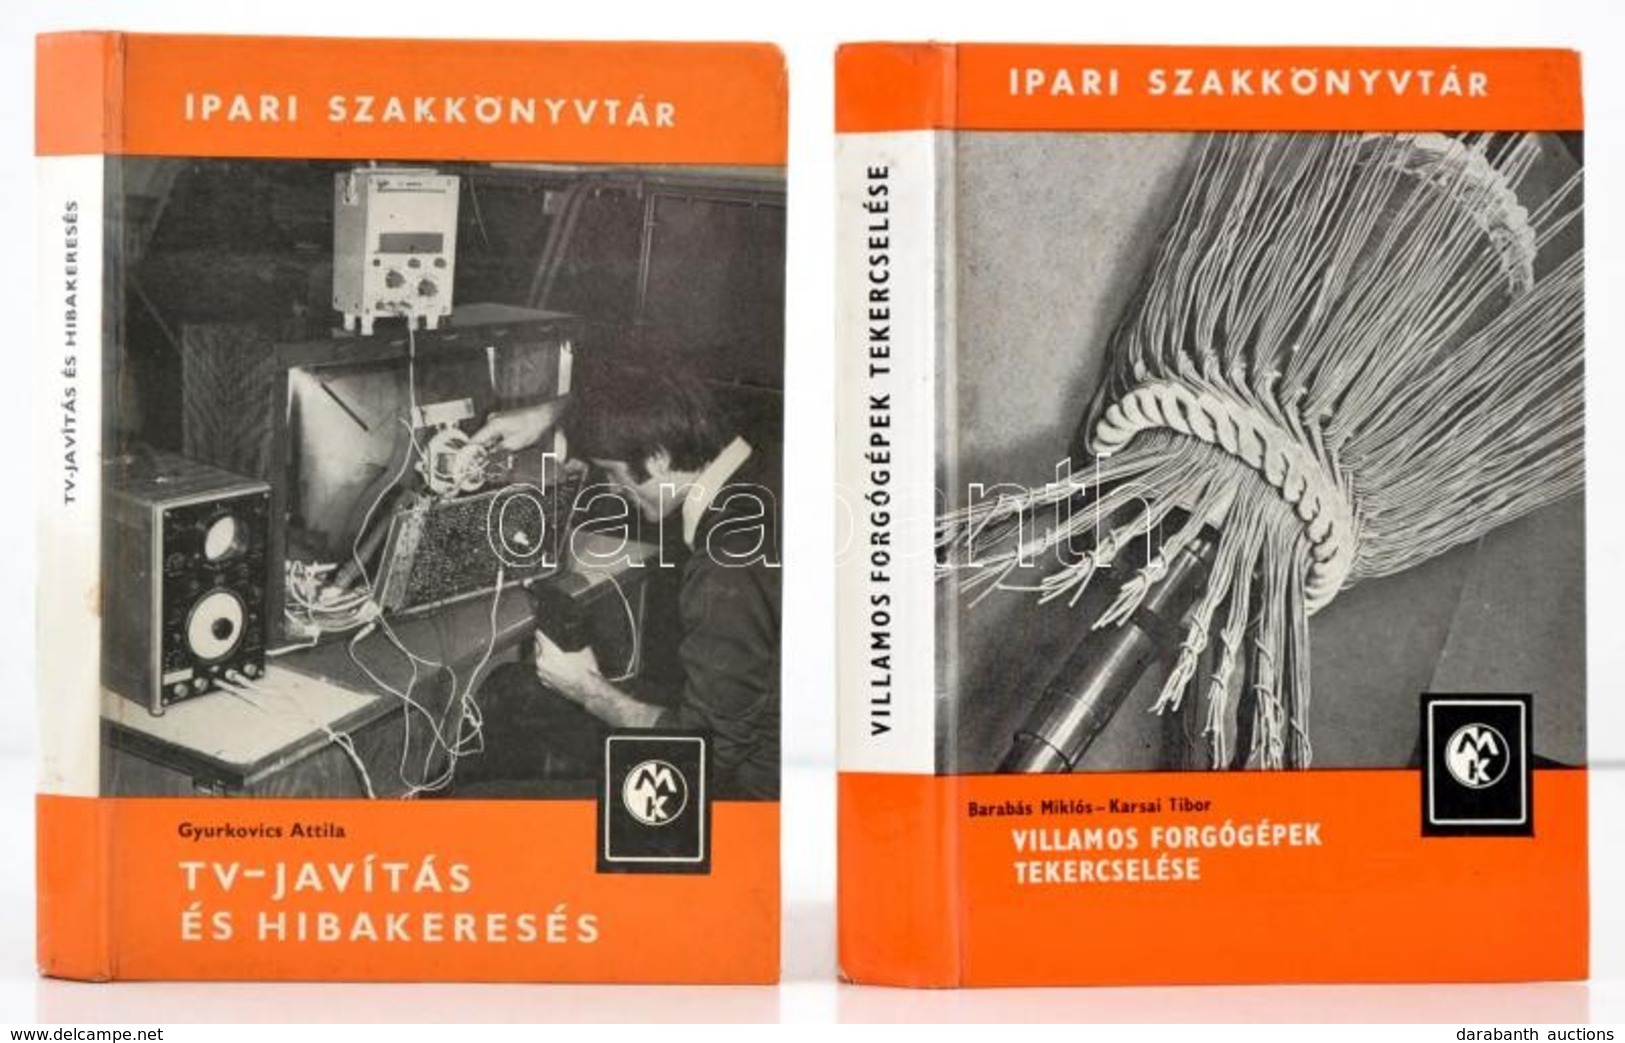 Ipari Szakkönyvtár Sorozat 2 Kötete: 

Barabás Miklós-Karsai Tibor: Villamos Forgógépek Tekercselése. Bp.,1982, Műszaki. - Unclassified